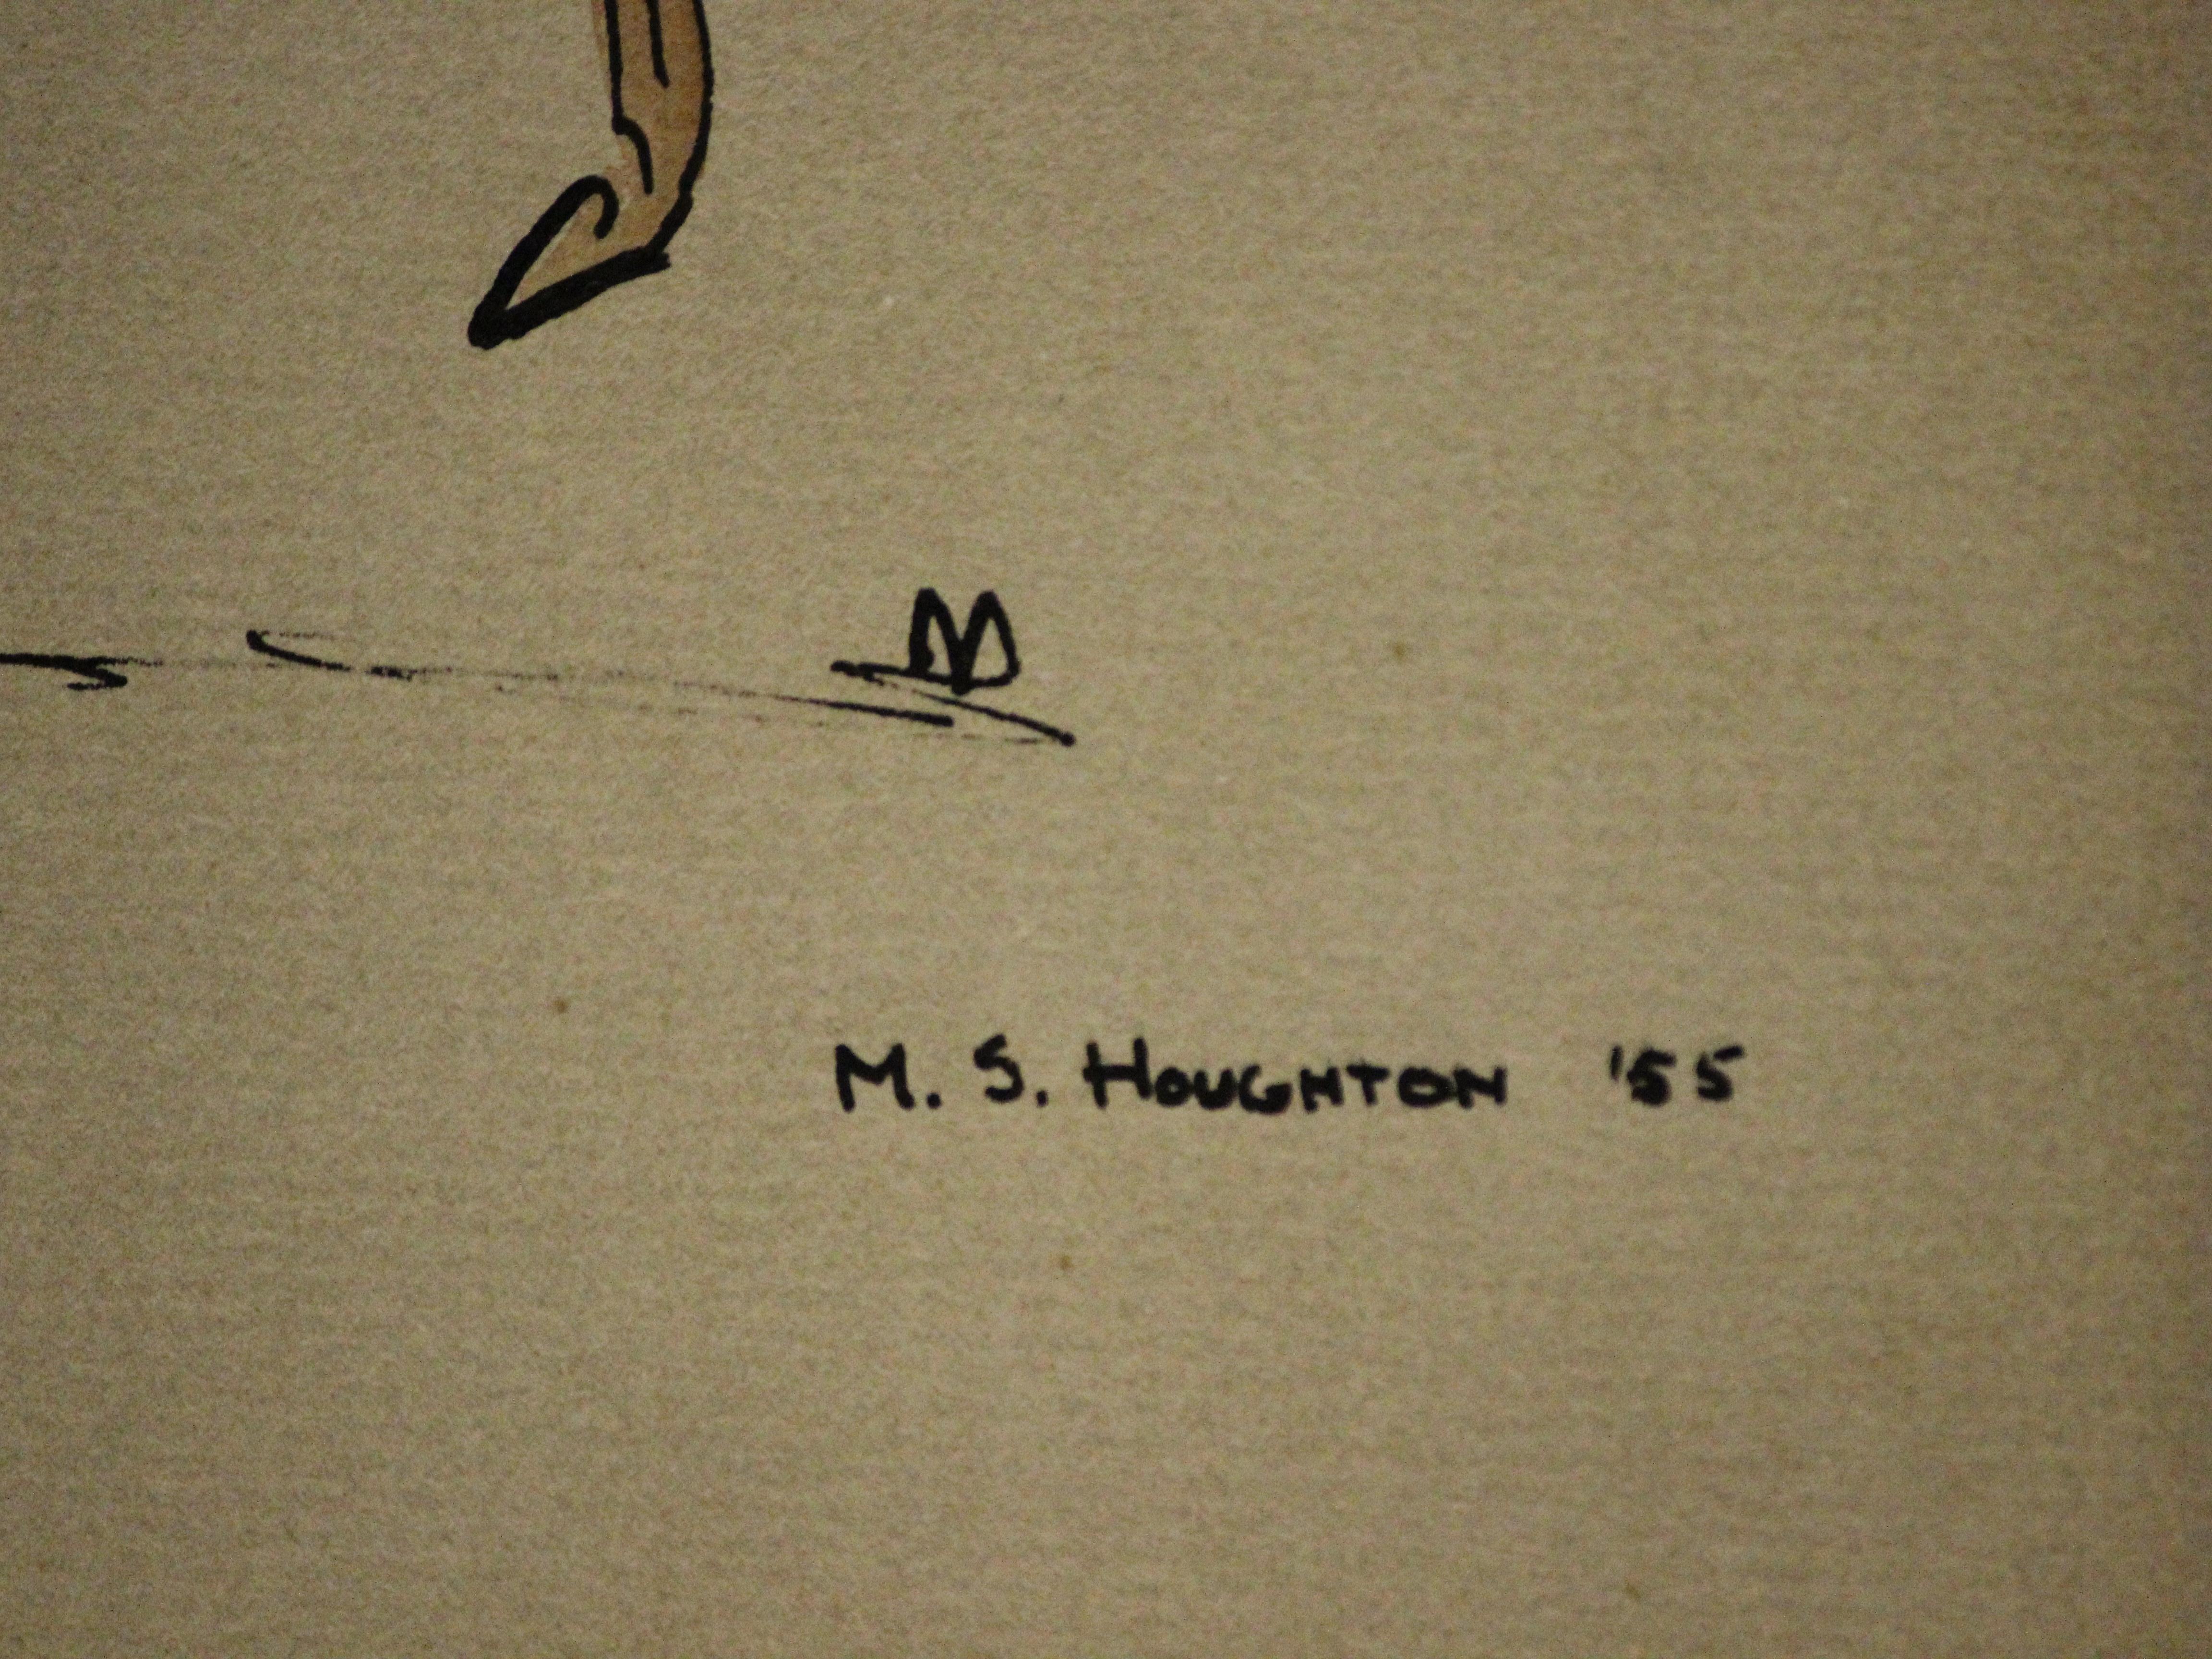 Classic equine watercolour & gouache signed M.S. Houghton '55 (LR)

Art Sz: 8 5/8